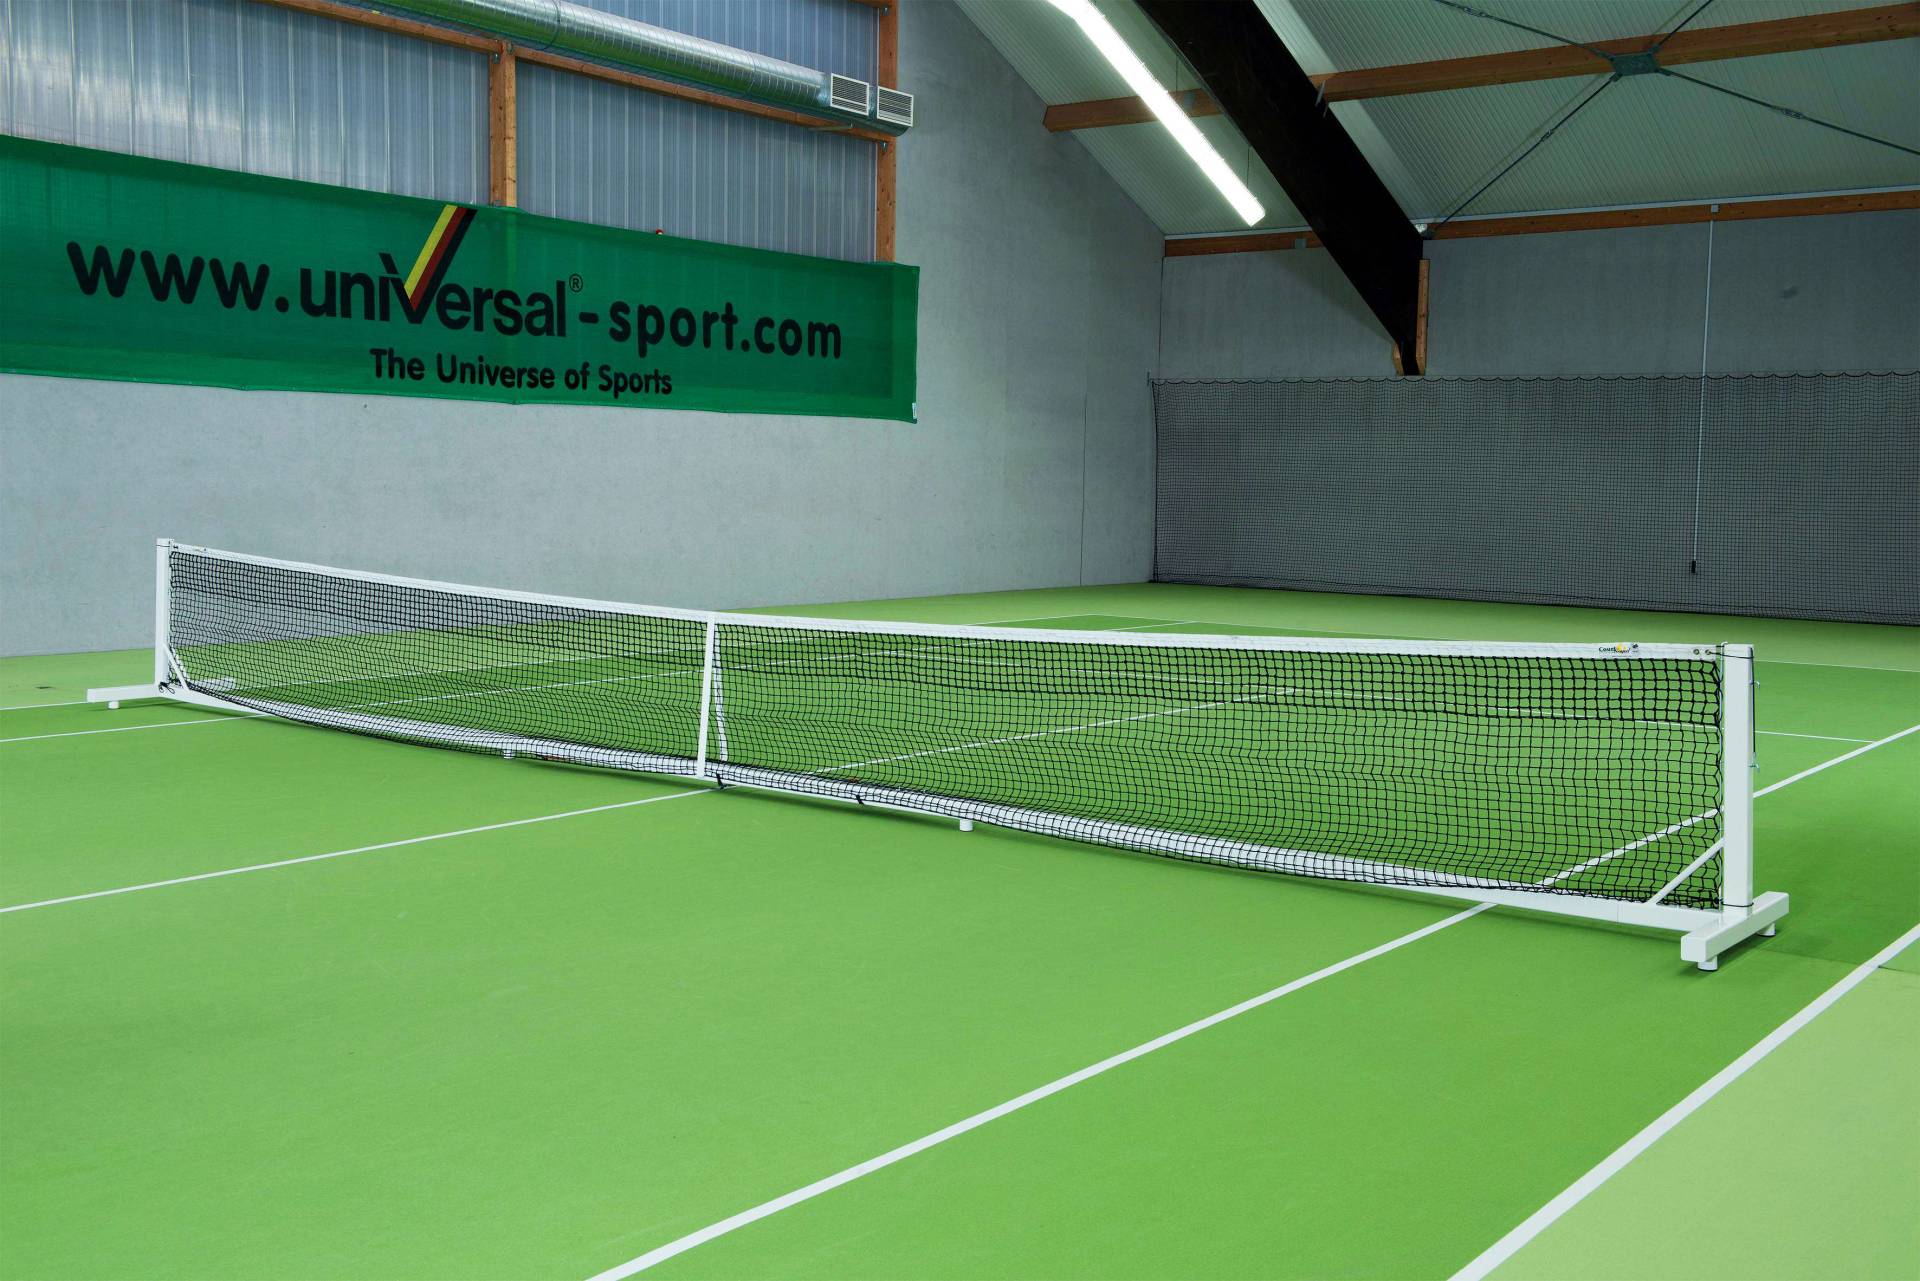 Court Royal Tennisnetzanlage "Mobil" von Court Royal